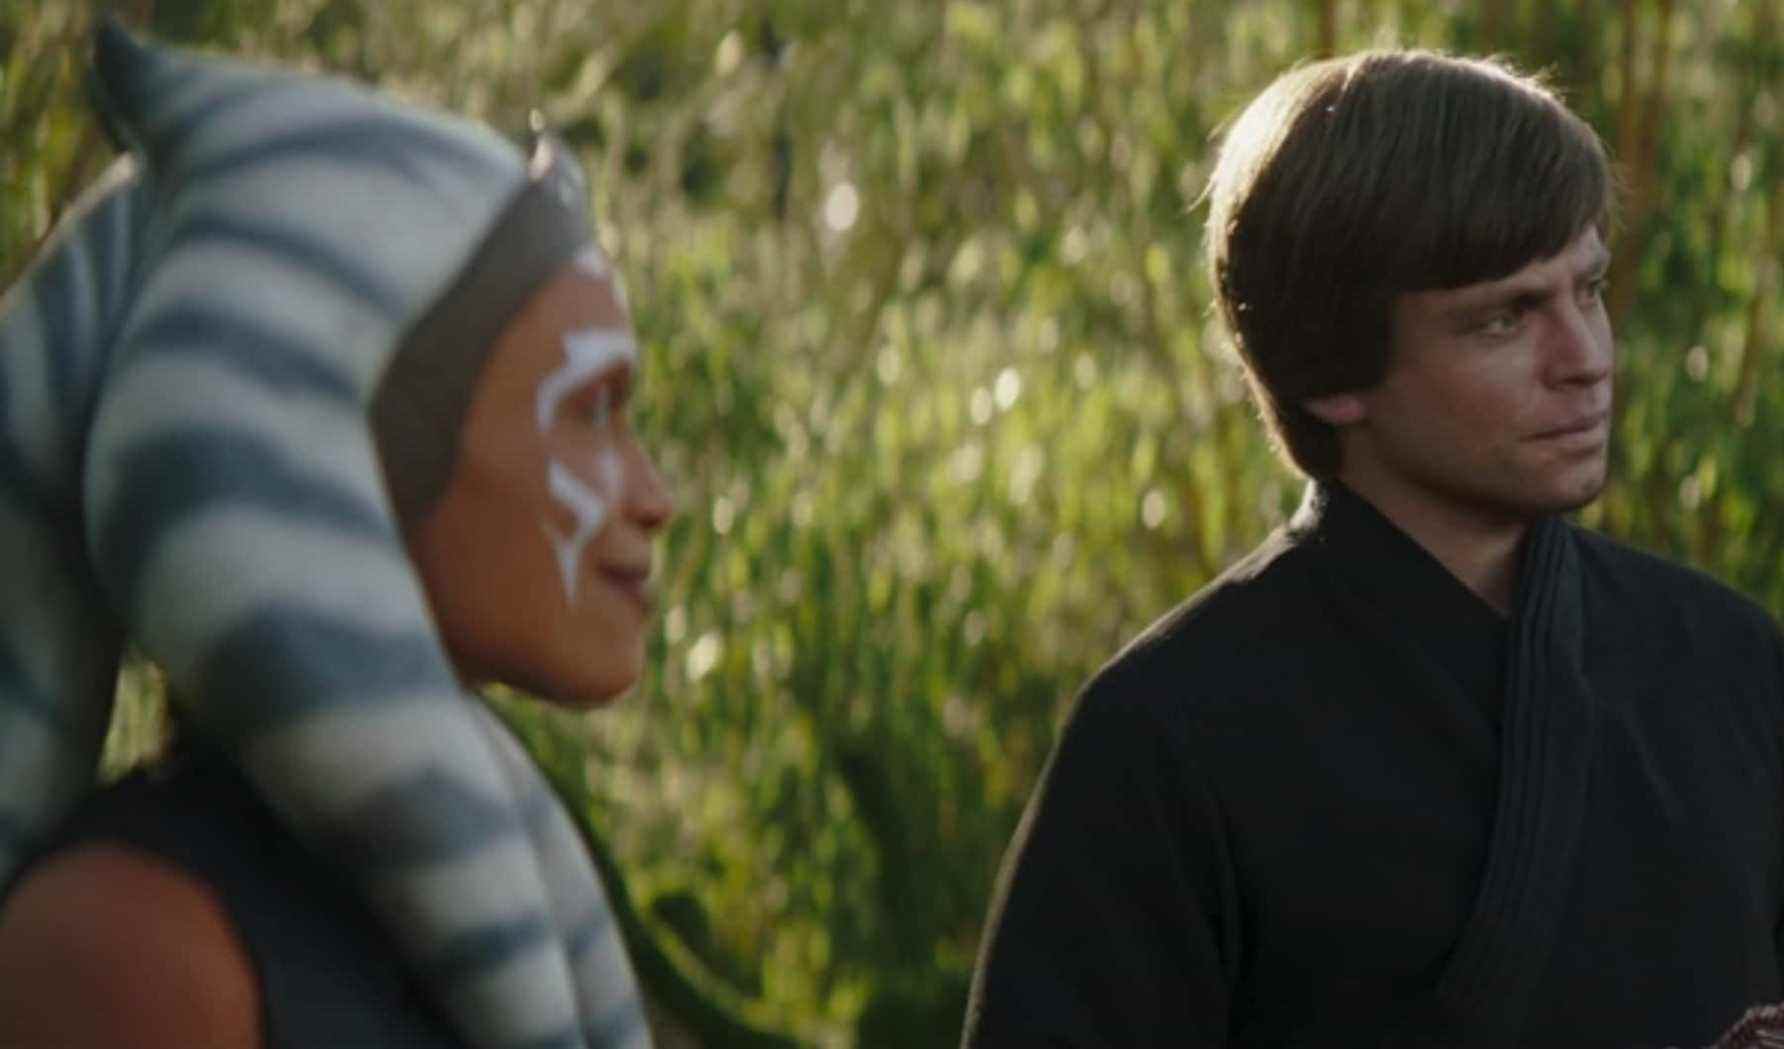 Revue du chapitre 6 de l'épisode 6 du Livre de Boba Fett Du désert vient un étranger Disney + Star Wars Luke Skywalker Ahsoka Tano Cad Bane Grogu bébé Yoda